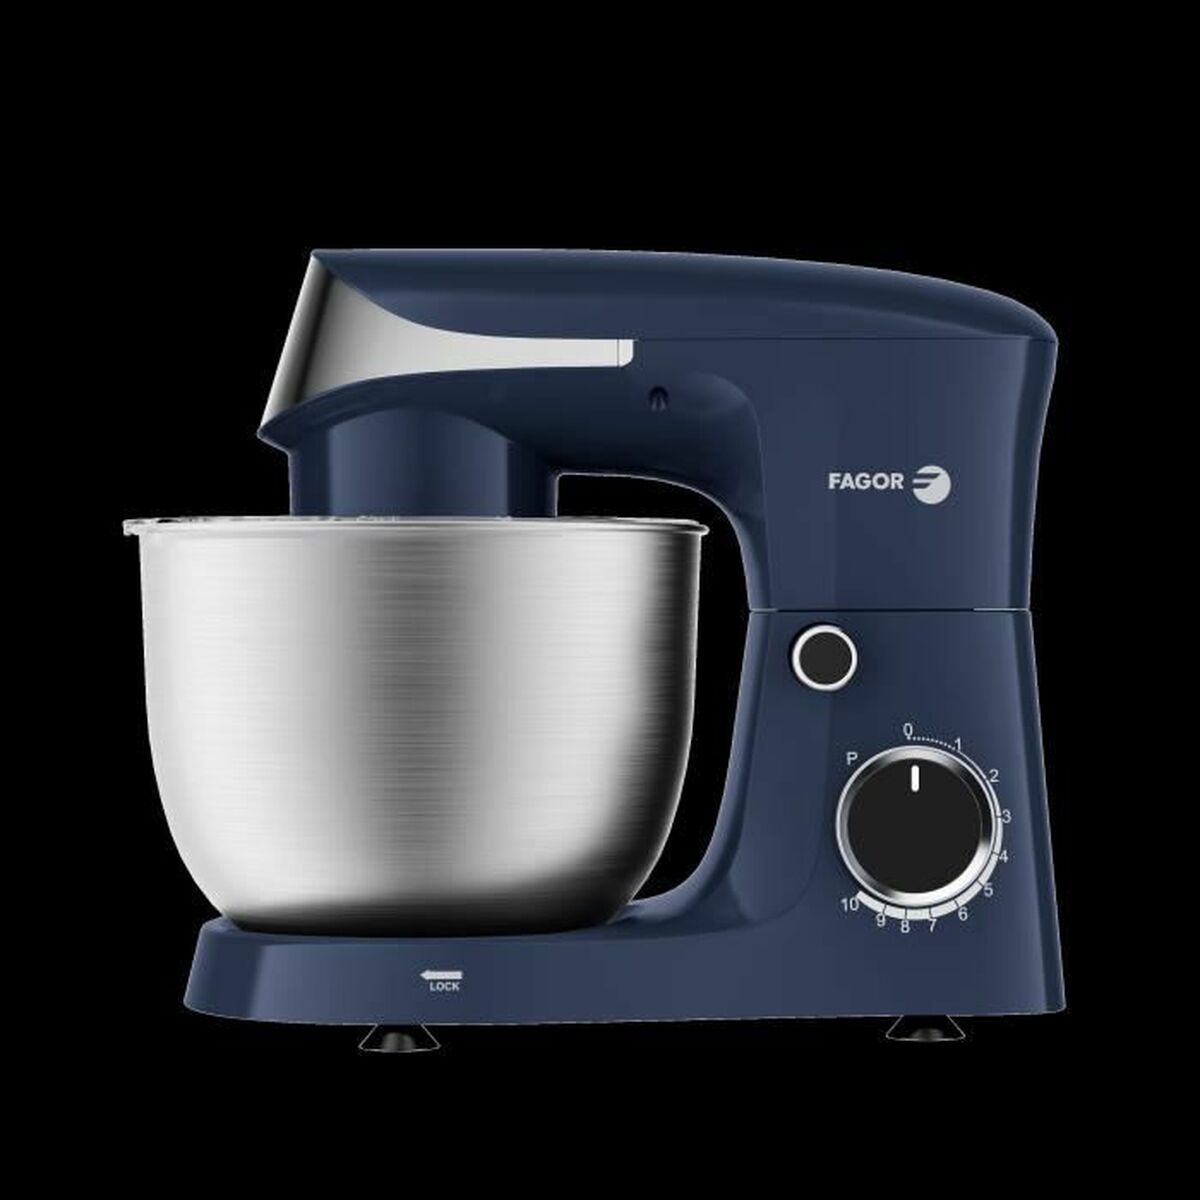 Küchenmaschine Fagor FG2433 Blau 1500 W 4,3 L - CA International  